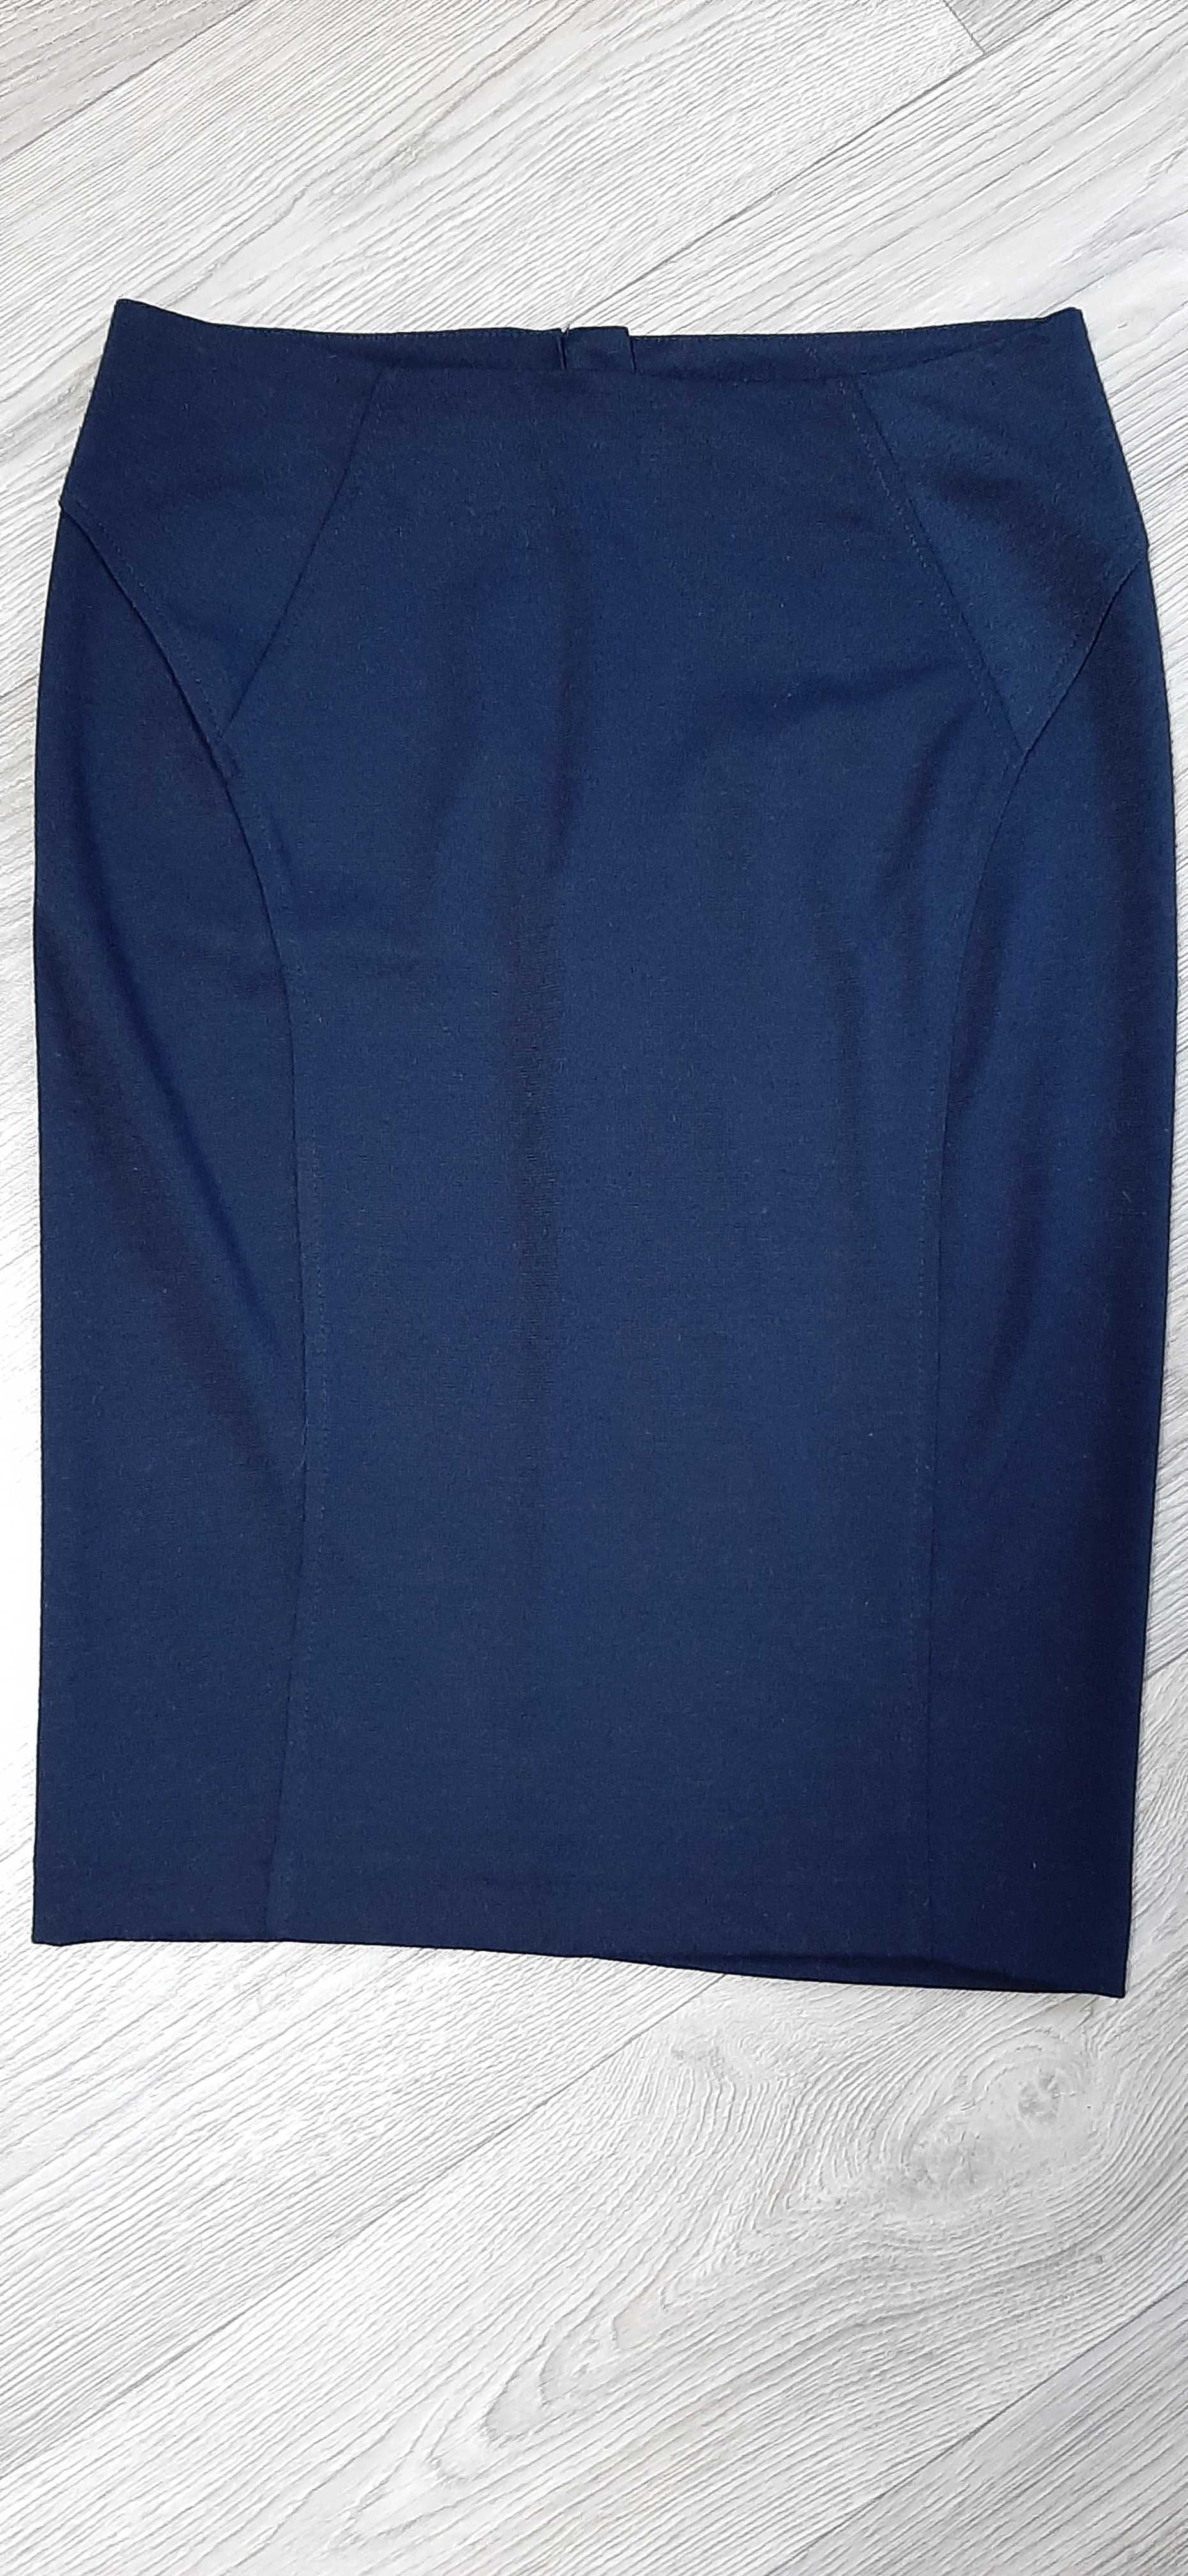 Школьная форма(юбка, женская юбка, офисная юбка), на 42 размер